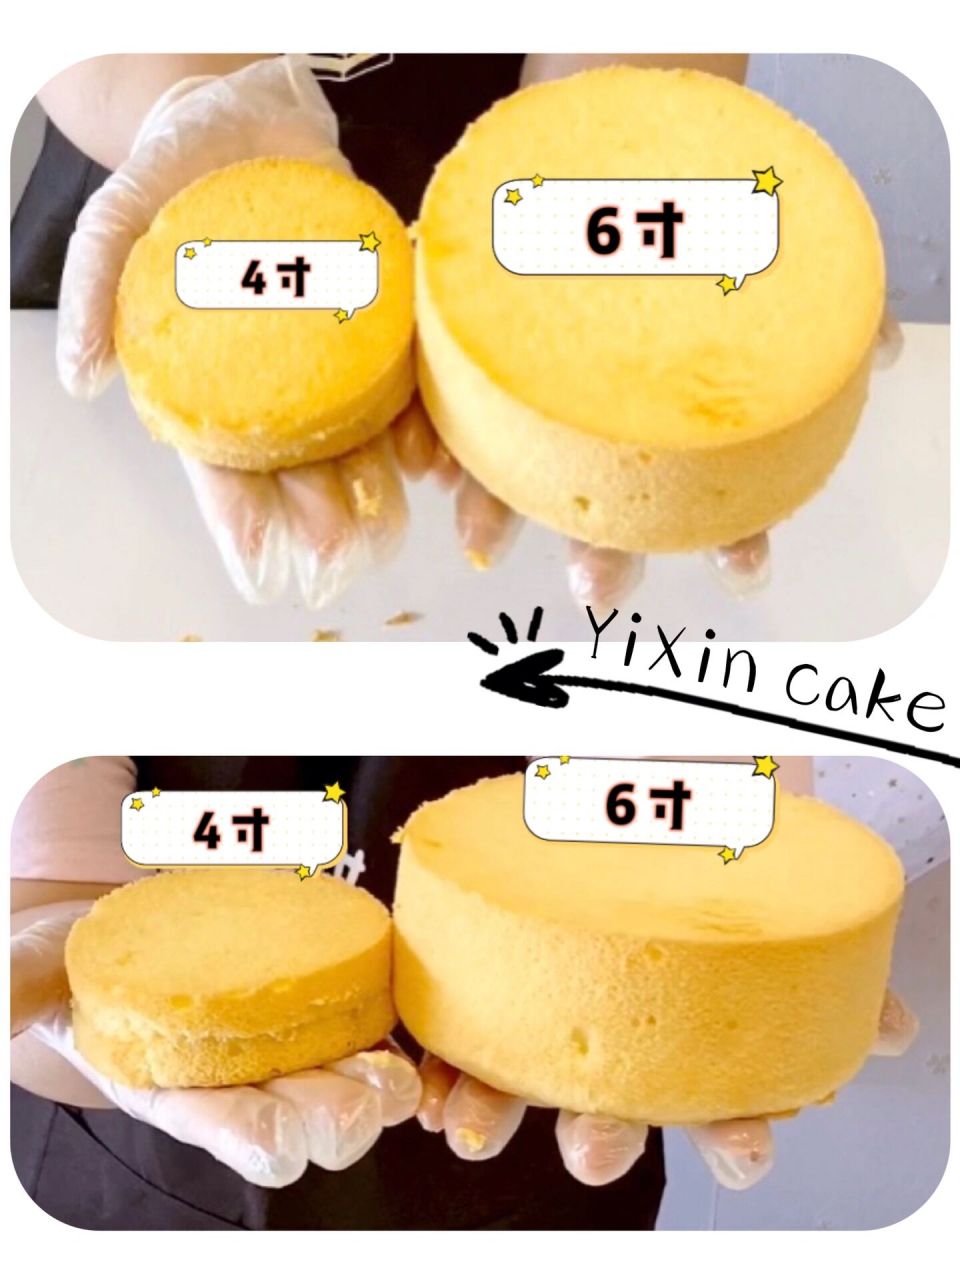 5寸6寸蛋糕对比照片图片